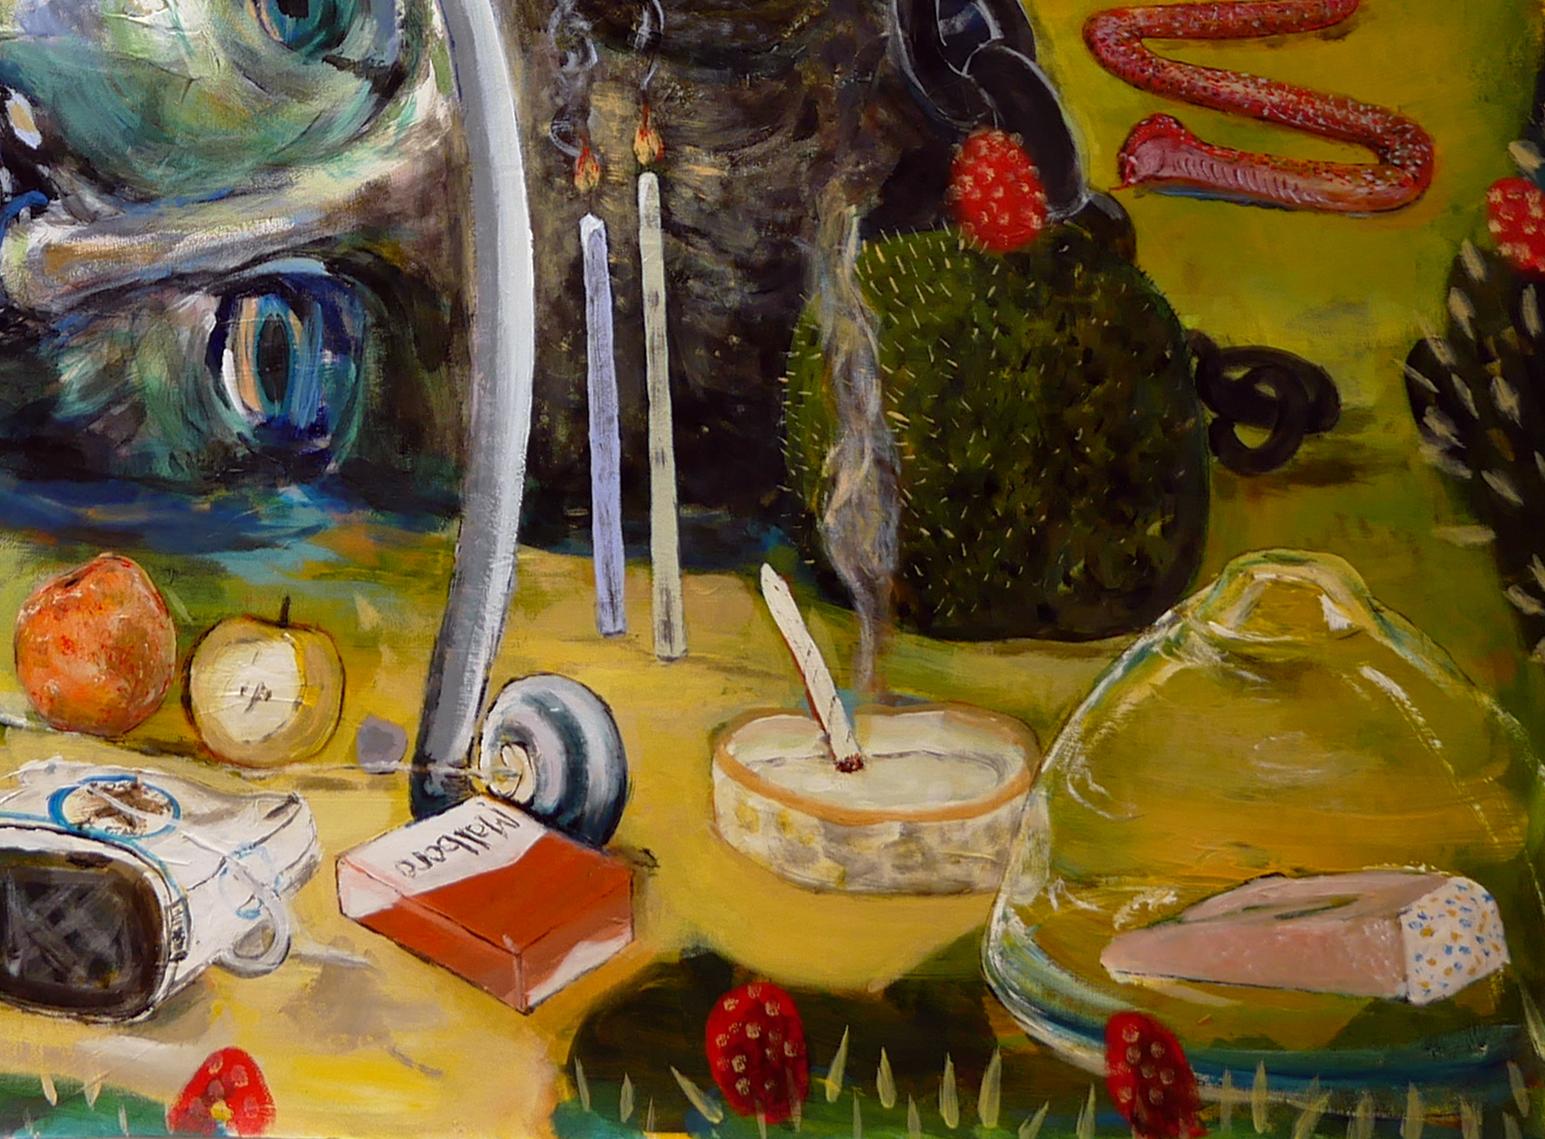 Peinture abstraite contemporaine colorée et fantaisiste de l'artiste Moisés Villafuerte de Houston, TX. L'œuvre présente une collection surréaliste d'objets, dont une grande sculpture d'une tête, une ancre, un arc et une flèche, un chien en ballon